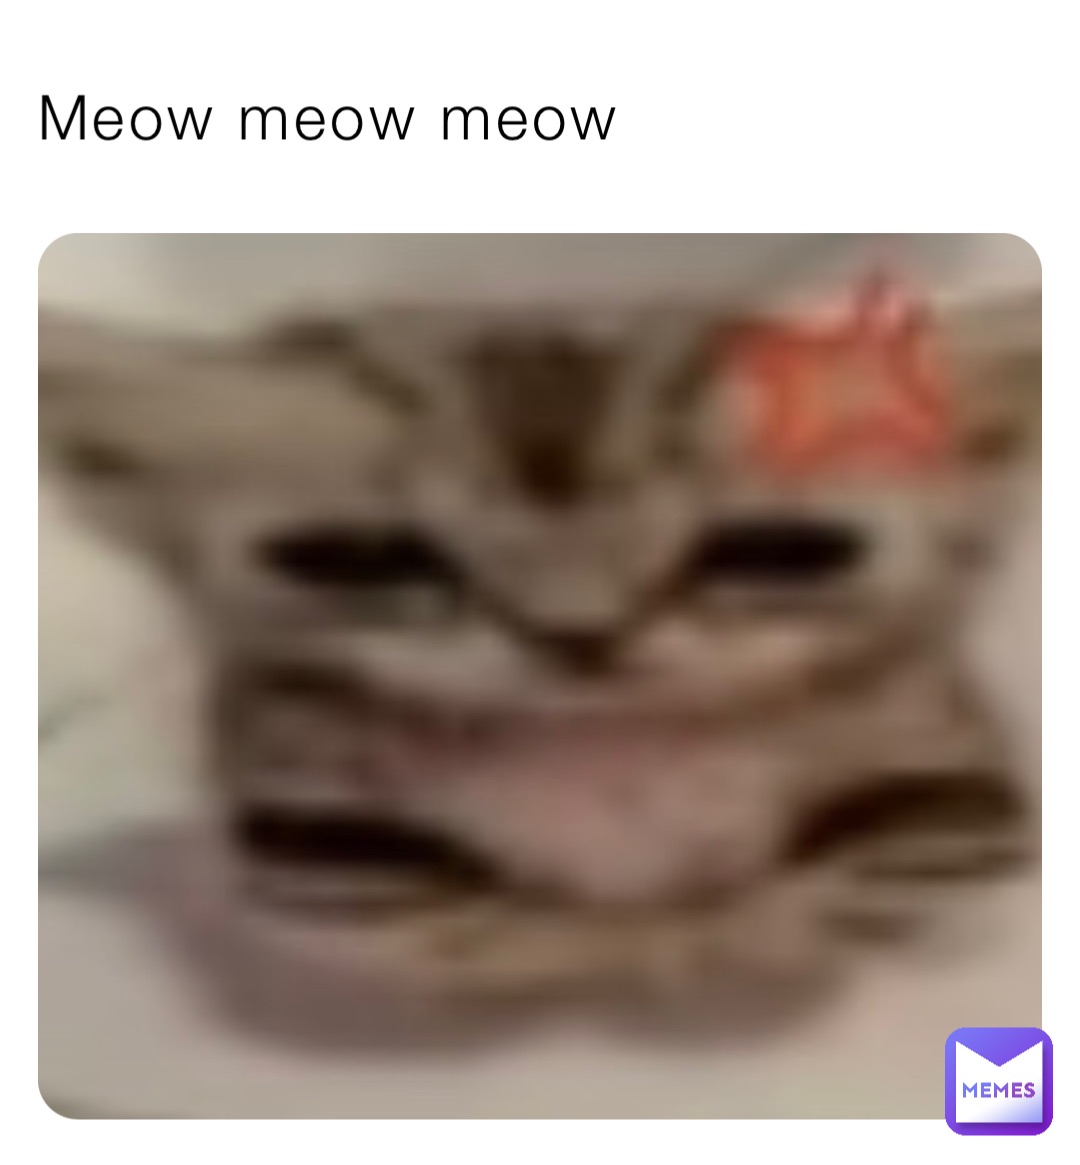 Meow meow meow